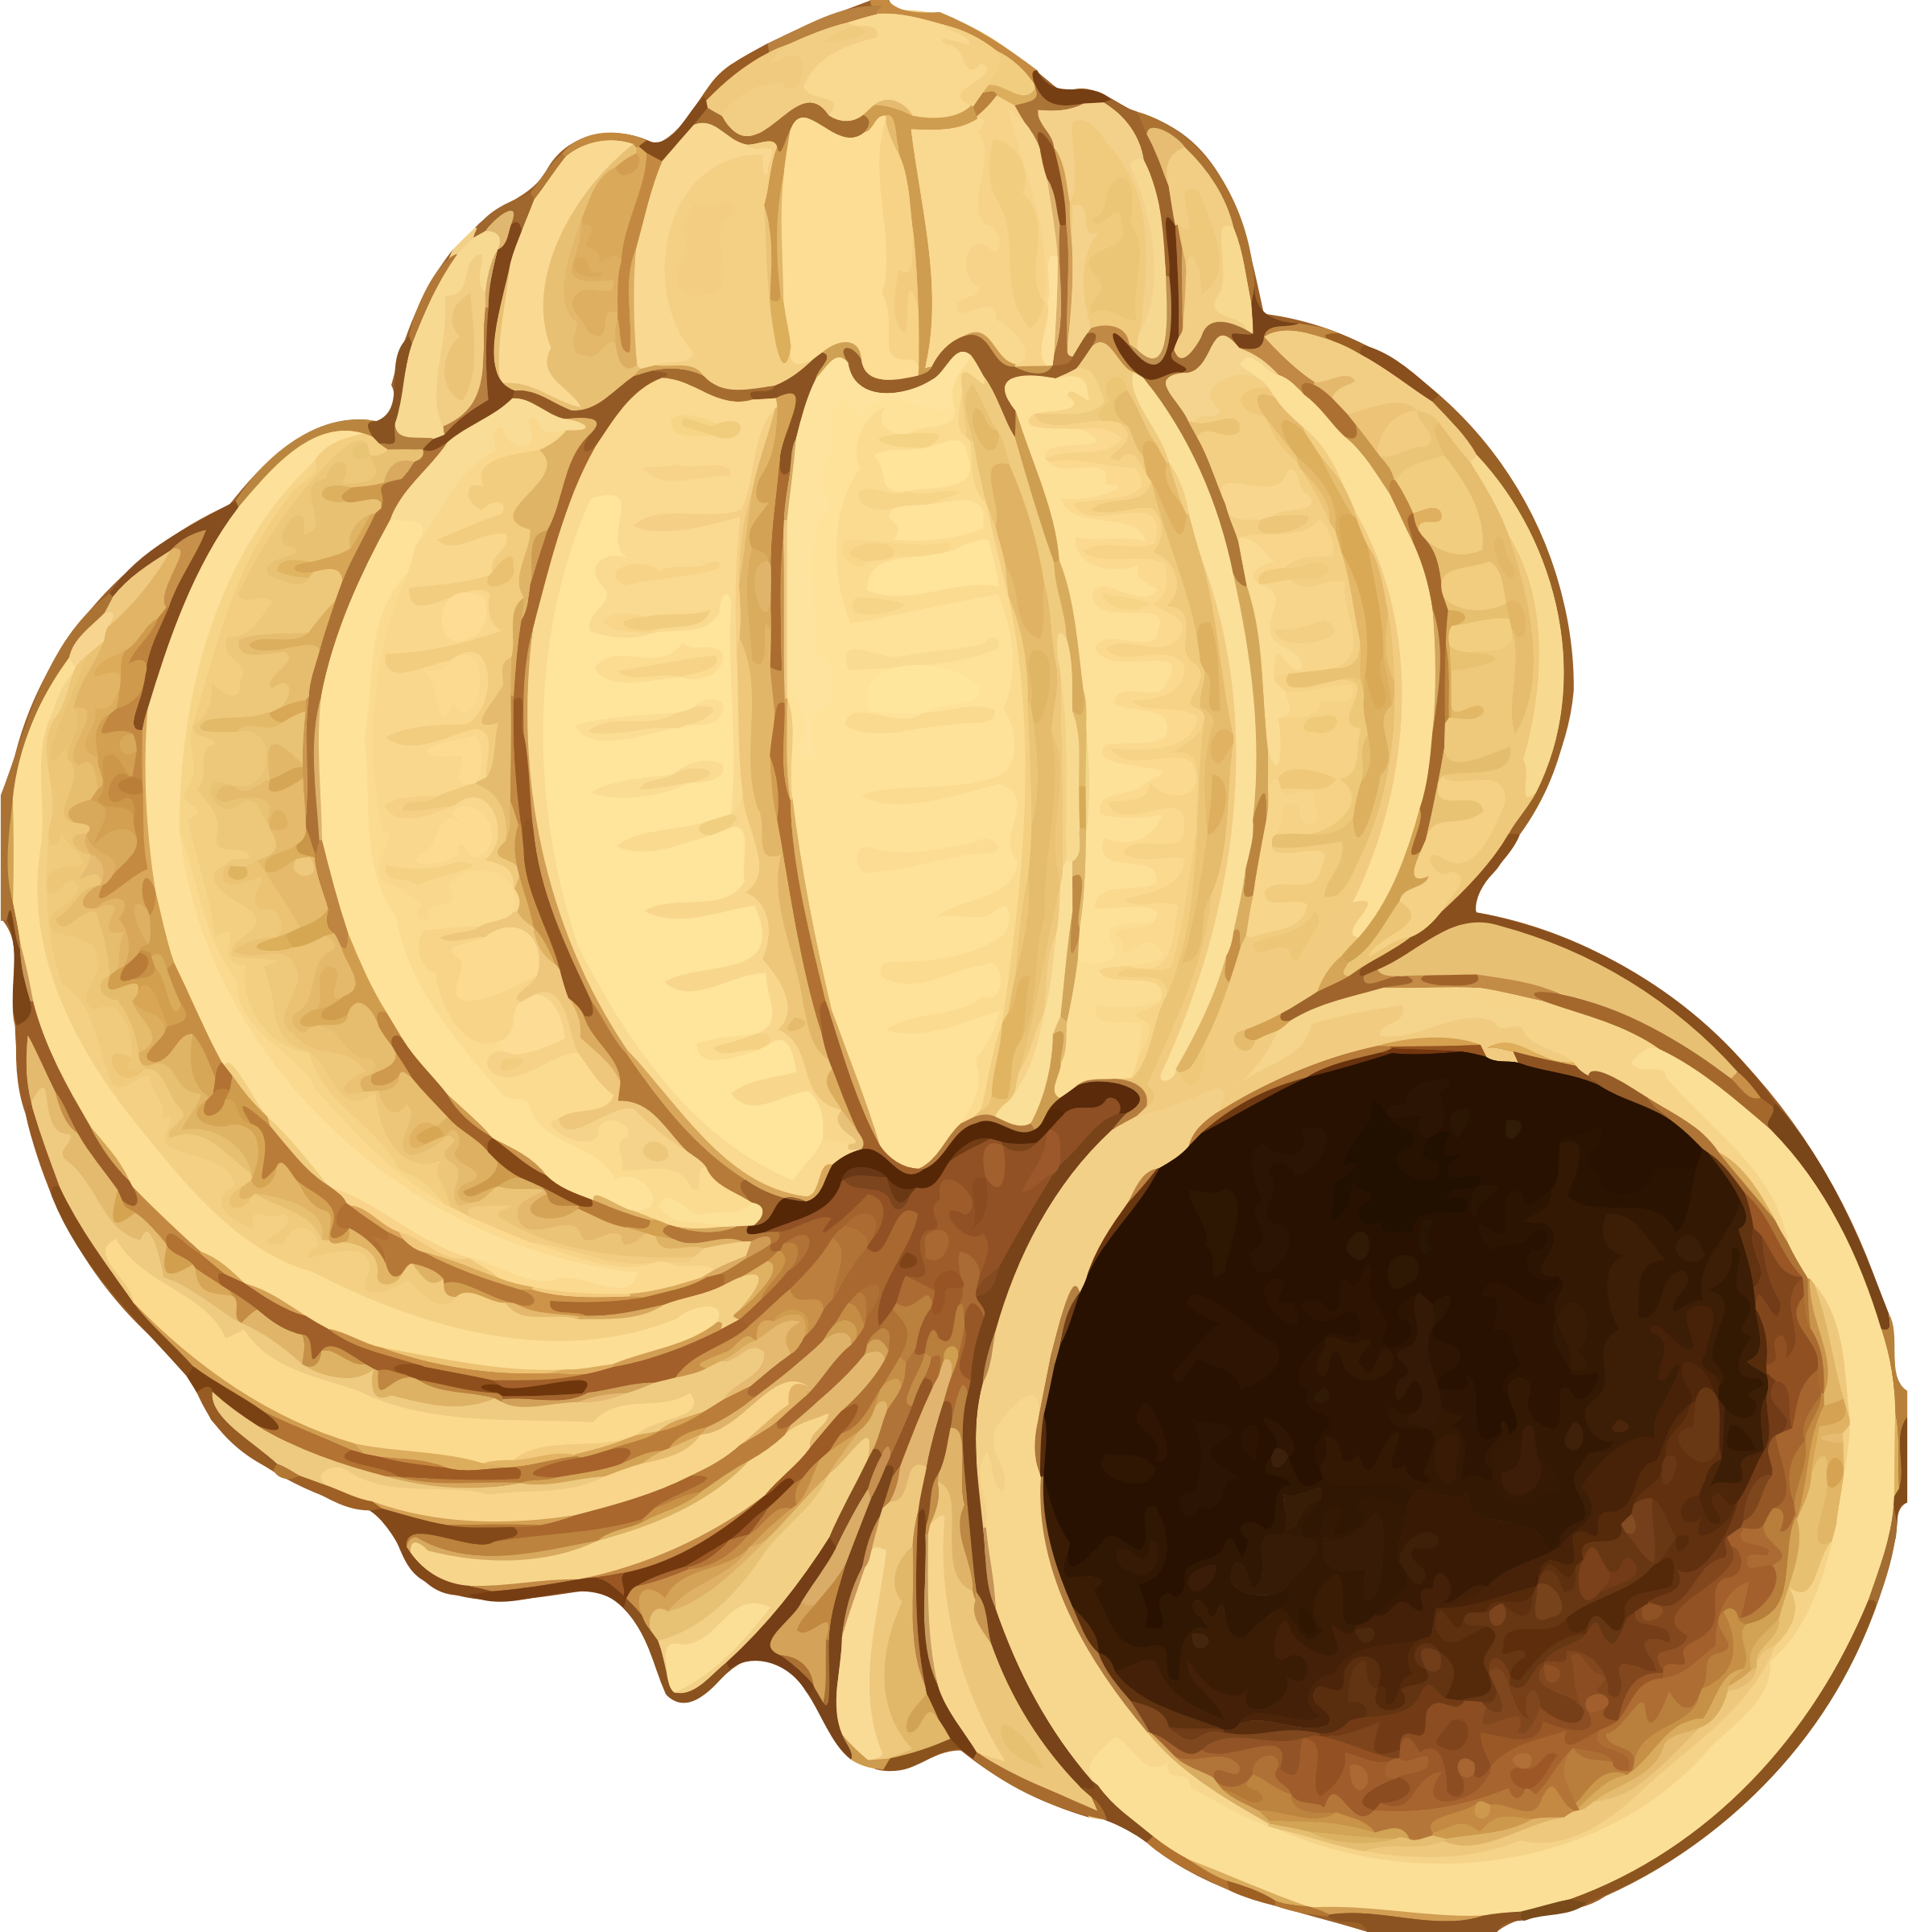 seashells clipart vector